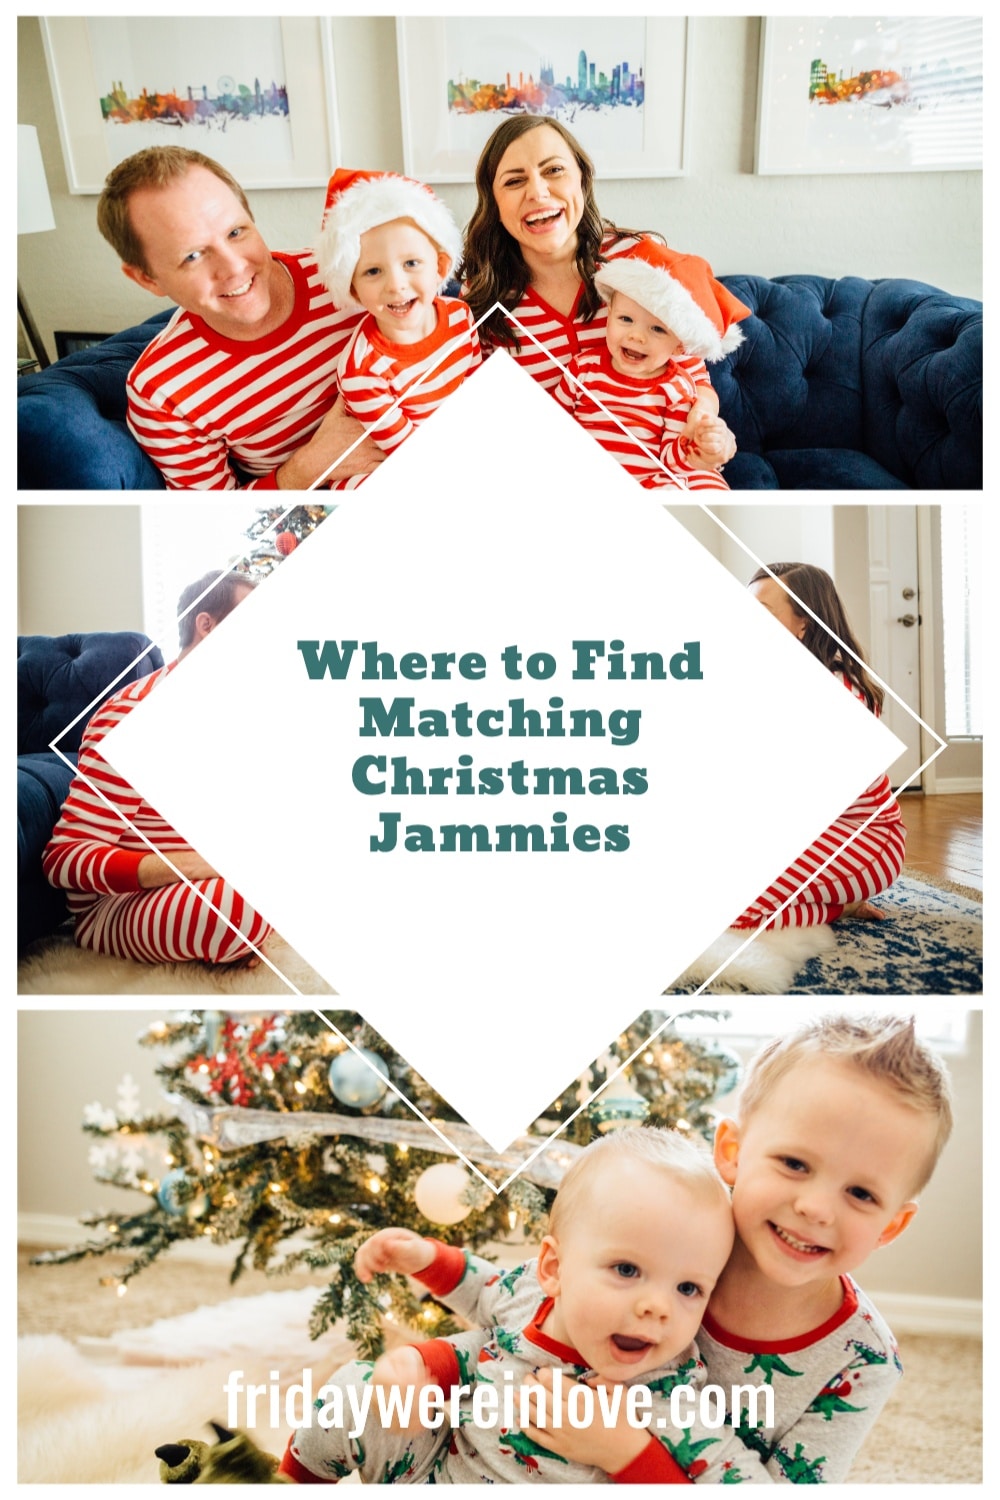 Family Christmas Pajamas - A Roundup of The Best Holiday Pajamas